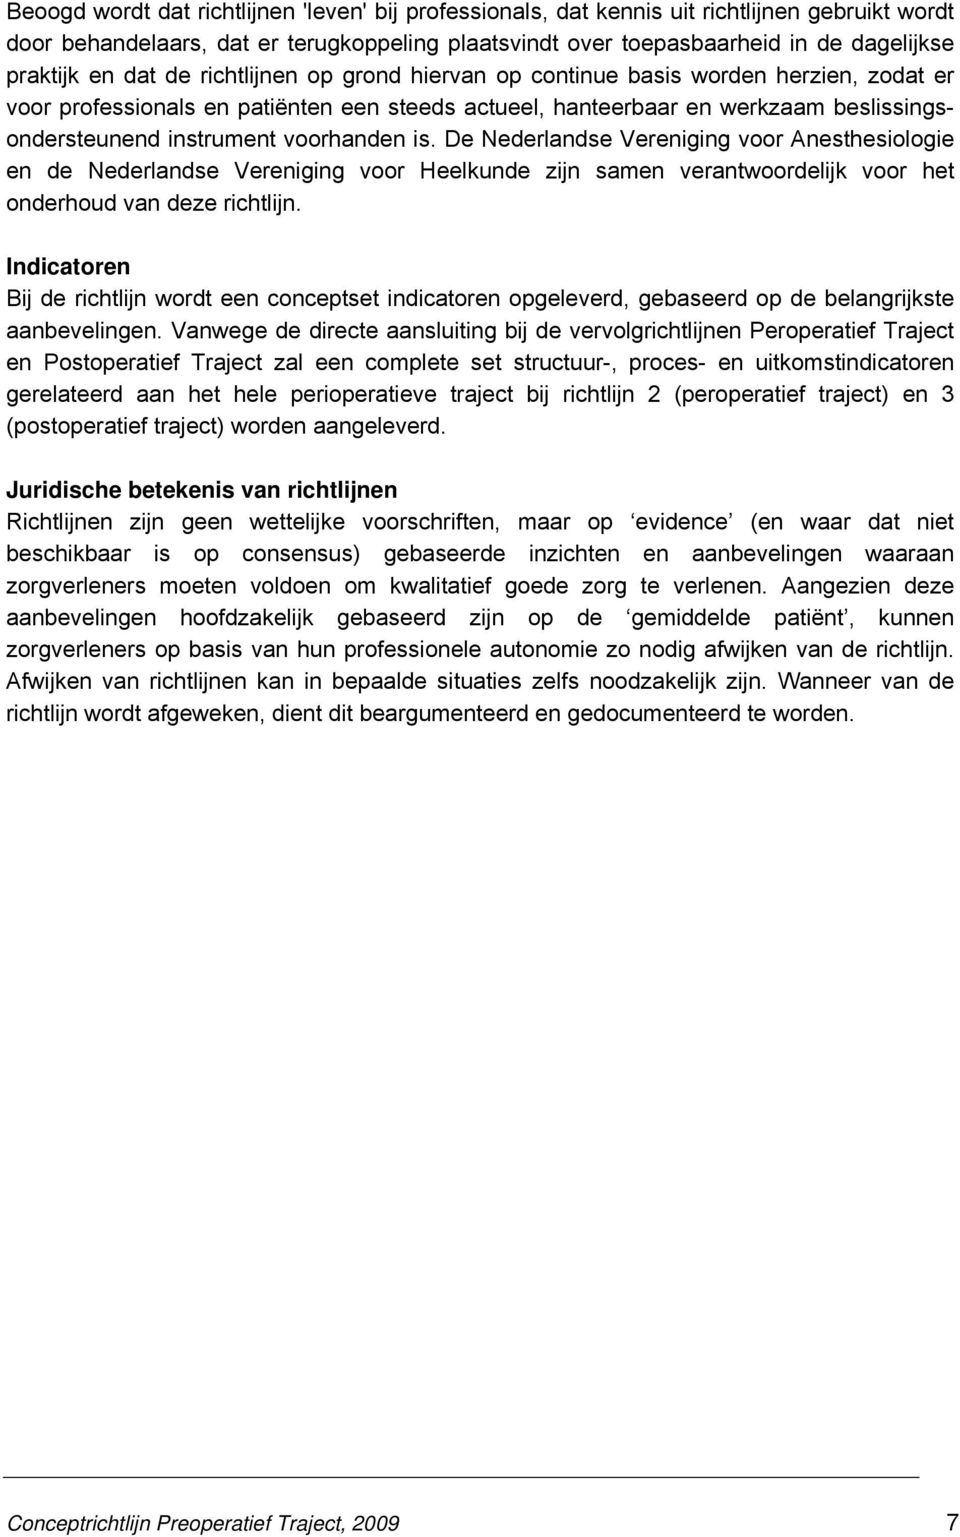 voorhanden is. De Nederlandse Vereniging voor Anesthesiologie en de Nederlandse Vereniging voor Heelkunde zijn samen verantwoordelijk voor het onderhoud van deze richtlijn.